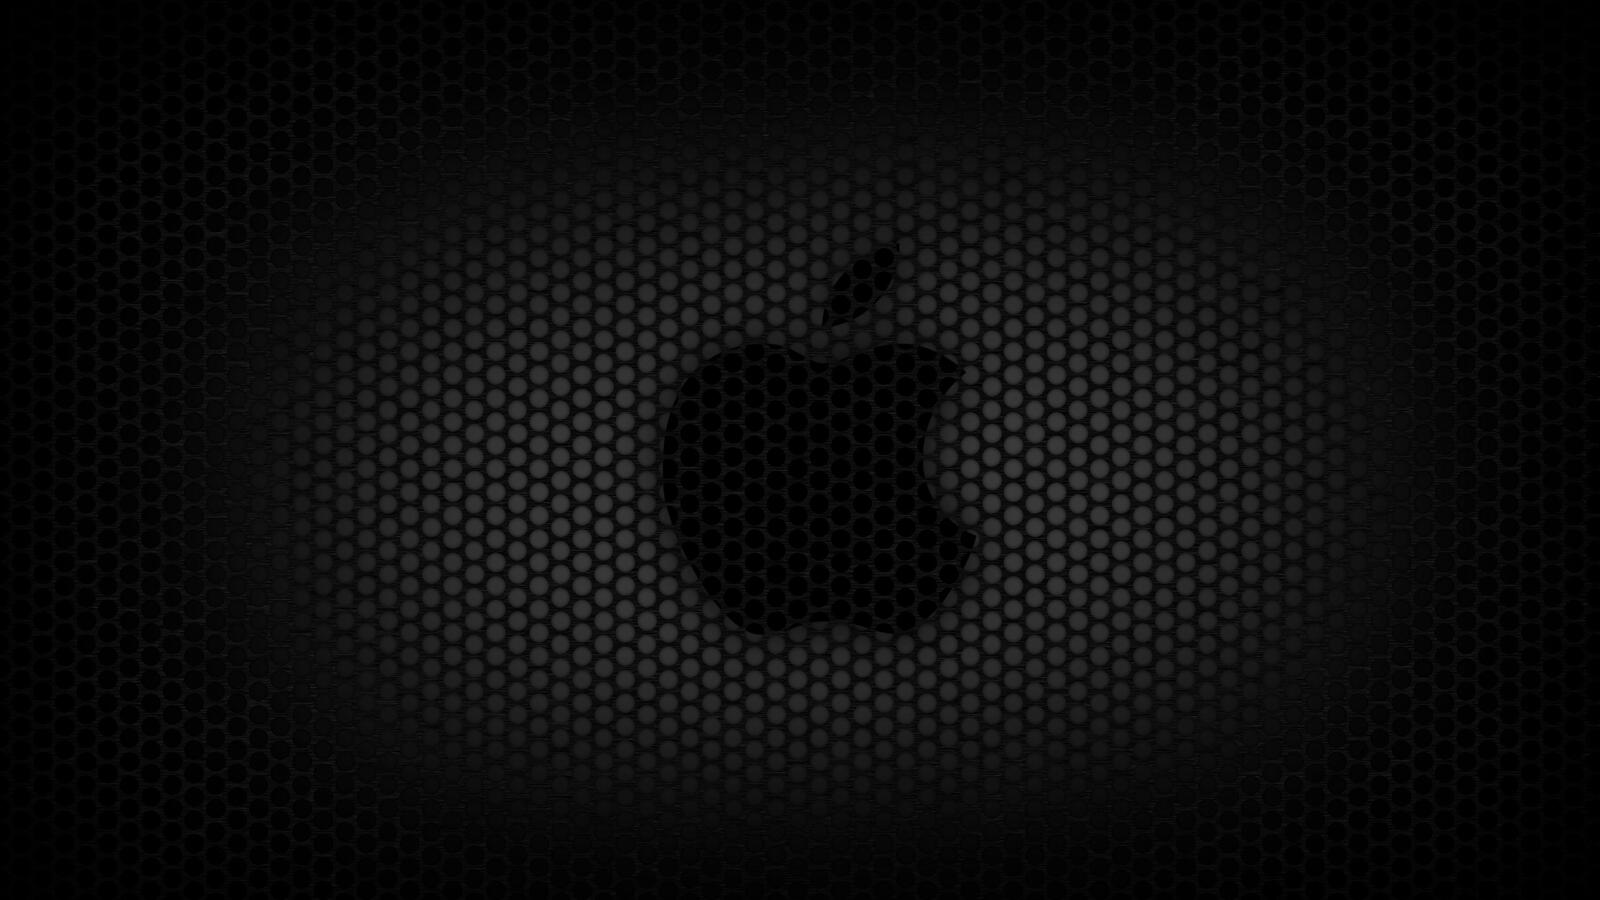 Бесплатное фото Логотип mac на темном фоне